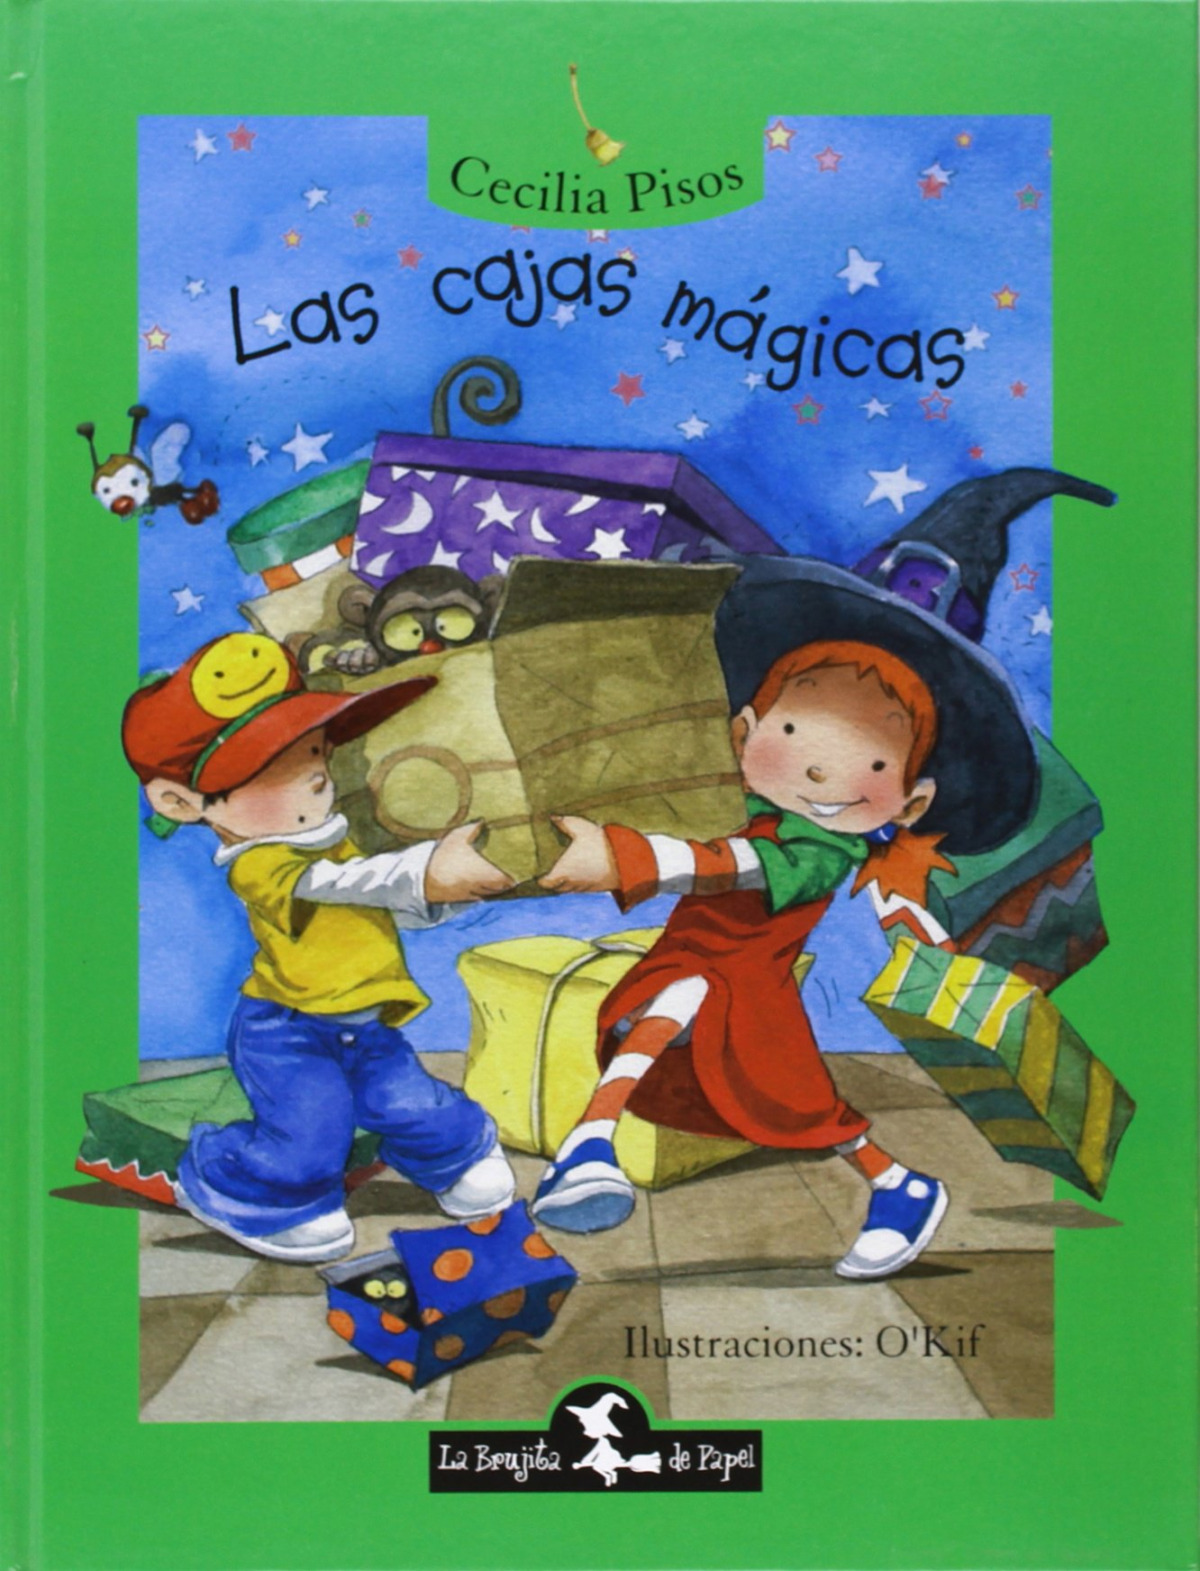 Cajas magicas - Pisos, Cecilia